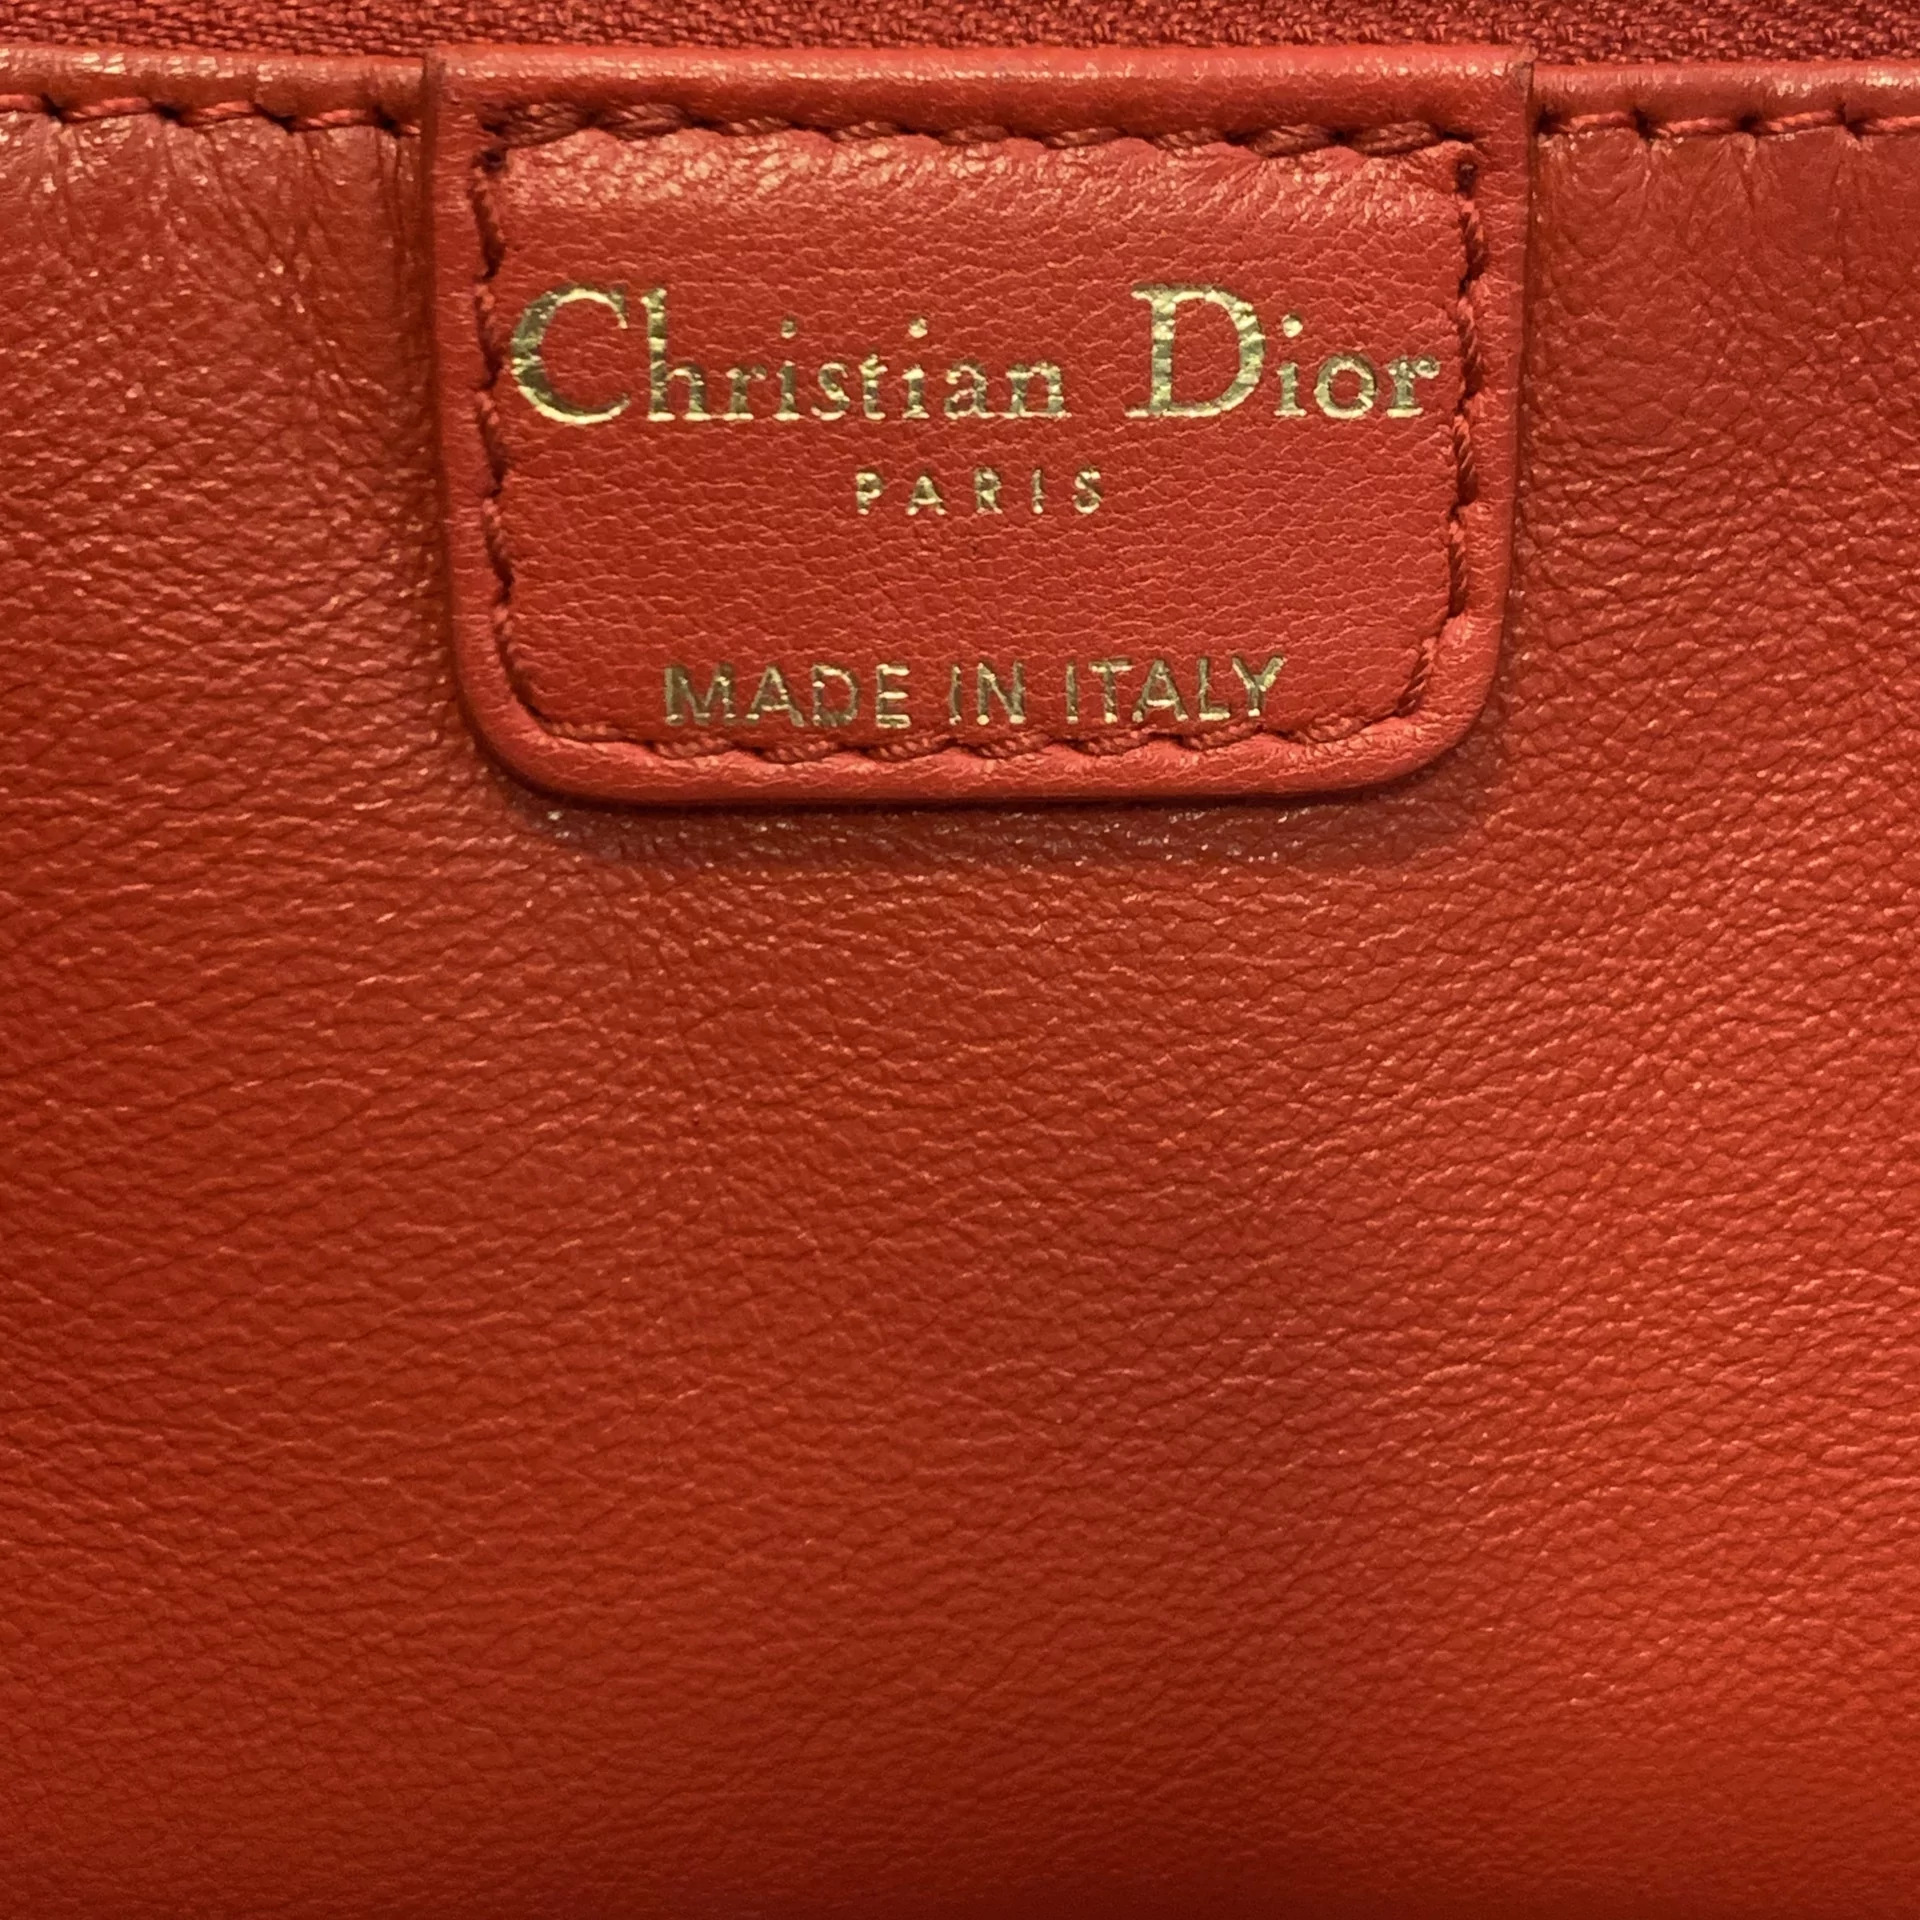 Bolsa Christian Dior Couro Trançado Vermelha